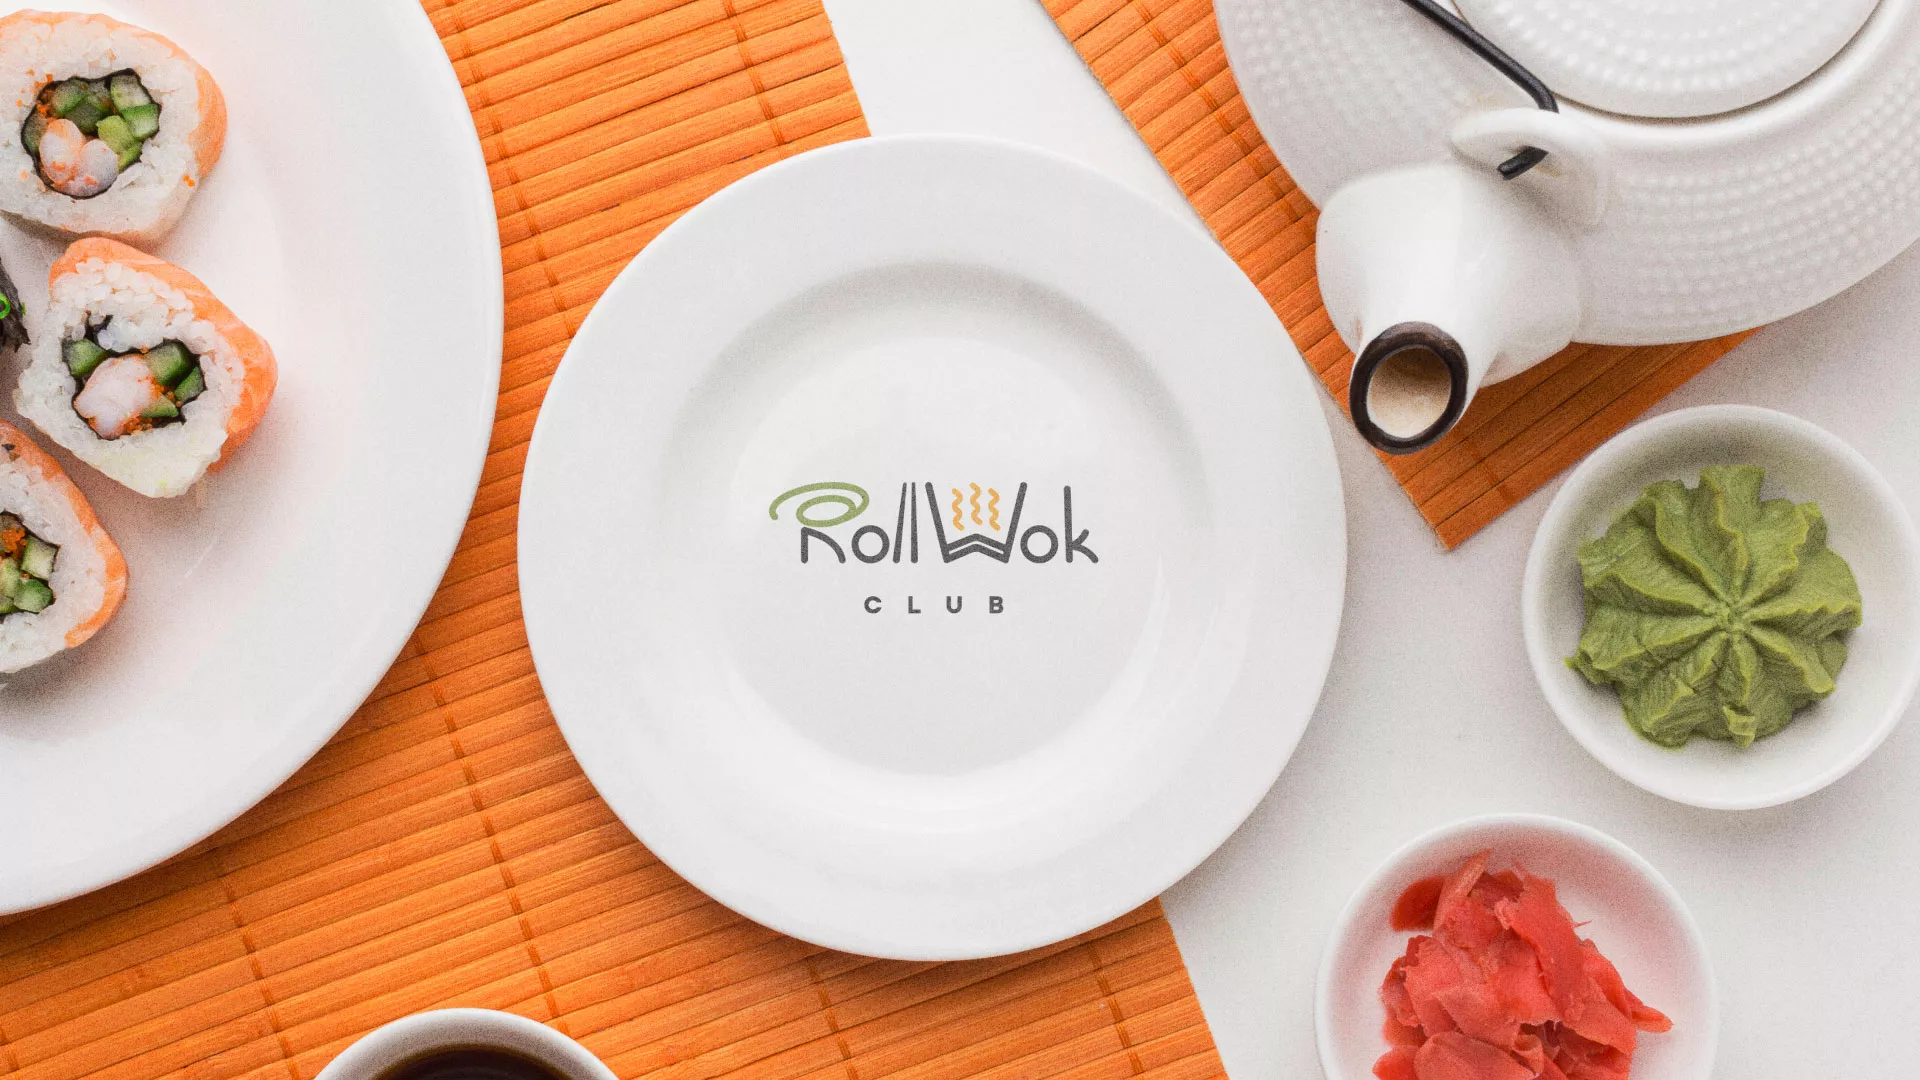 Разработка логотипа и фирменного стиля суши-бара «Roll Wok Club» в Чехове